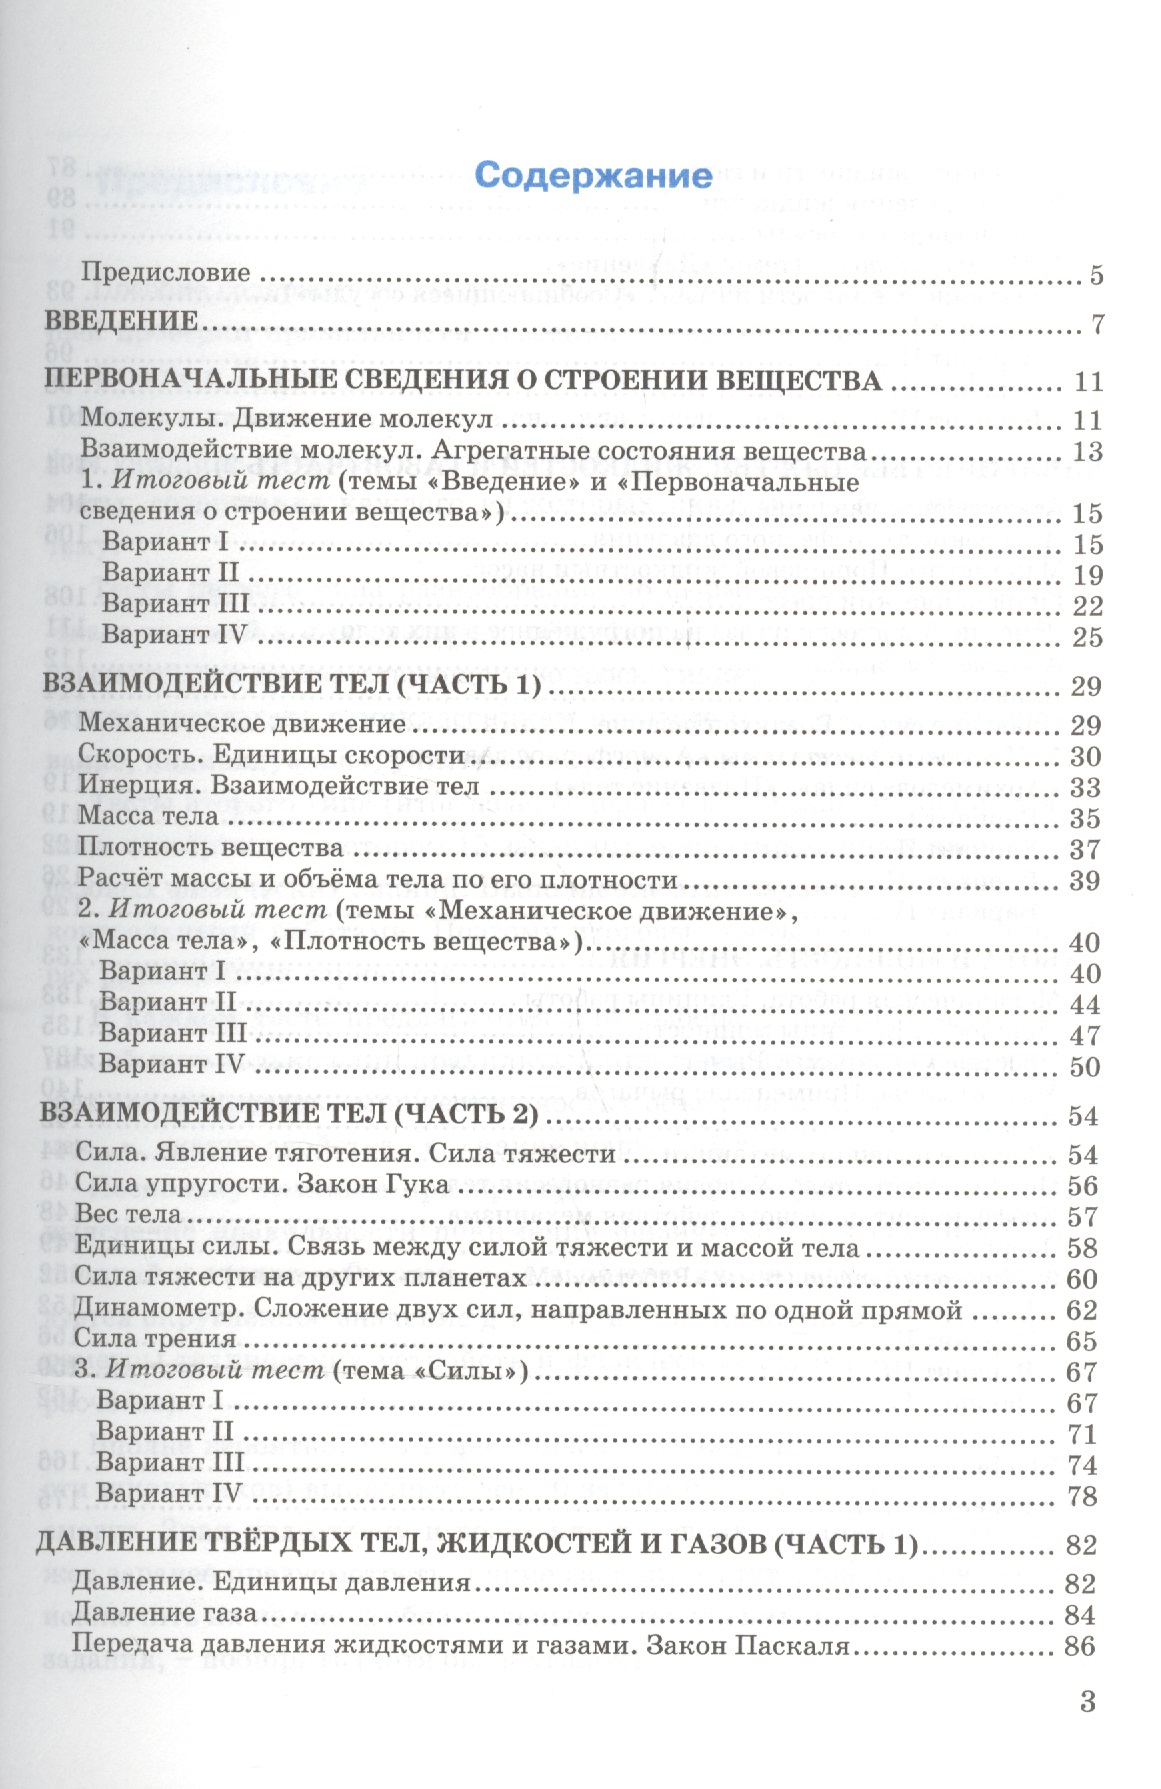 Решебник к учебнику рудзитиса 11 класса 2018года страница 74 задание